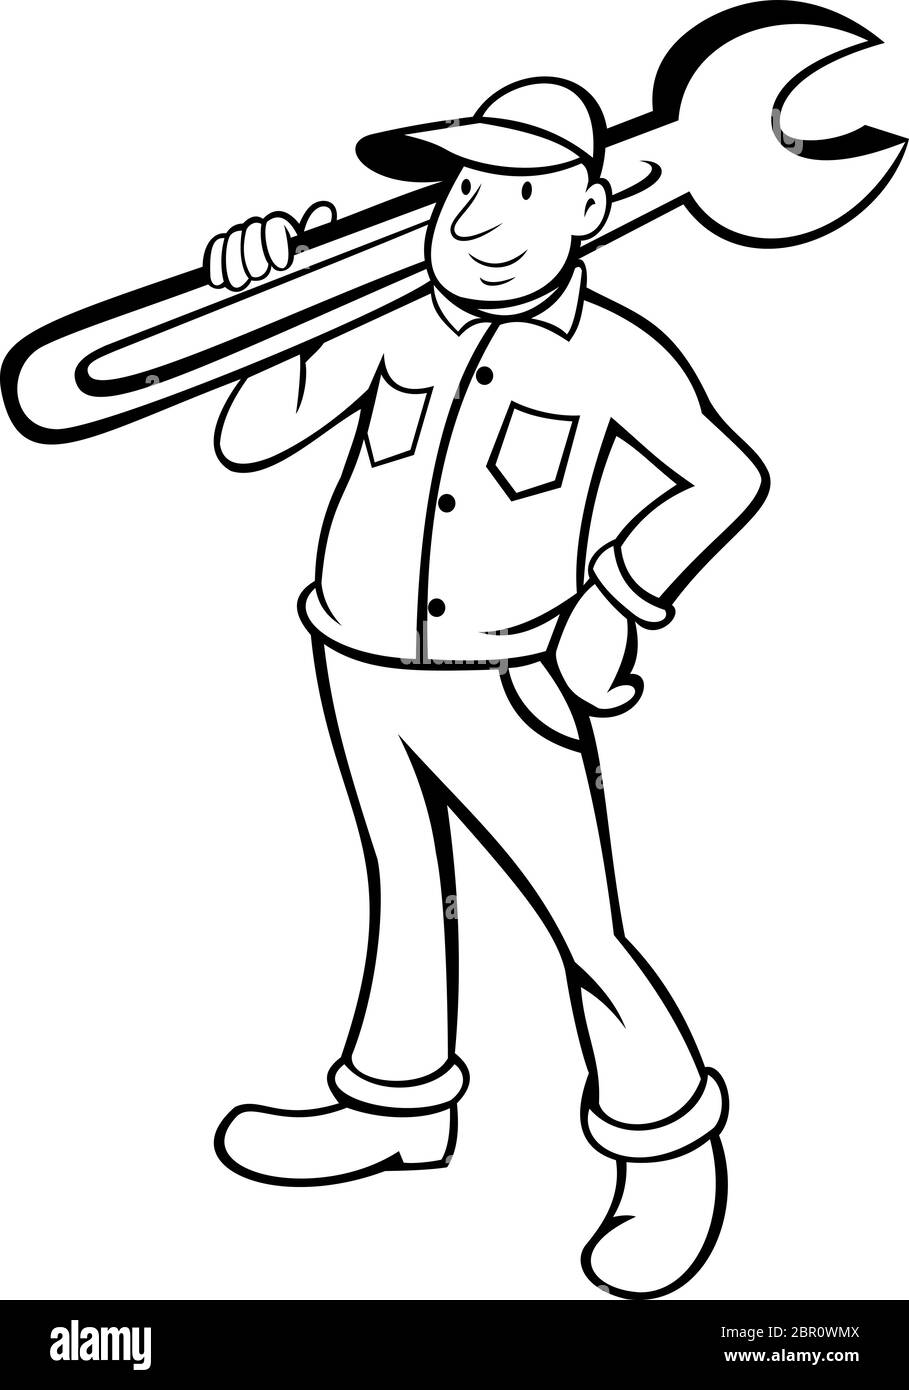 Illustration de style caricaturer d'un plombier ou d'un homme de main tenant une clé à pipe sur un fond blanc isolé fait en noir et blanc. Illustration de Vecteur